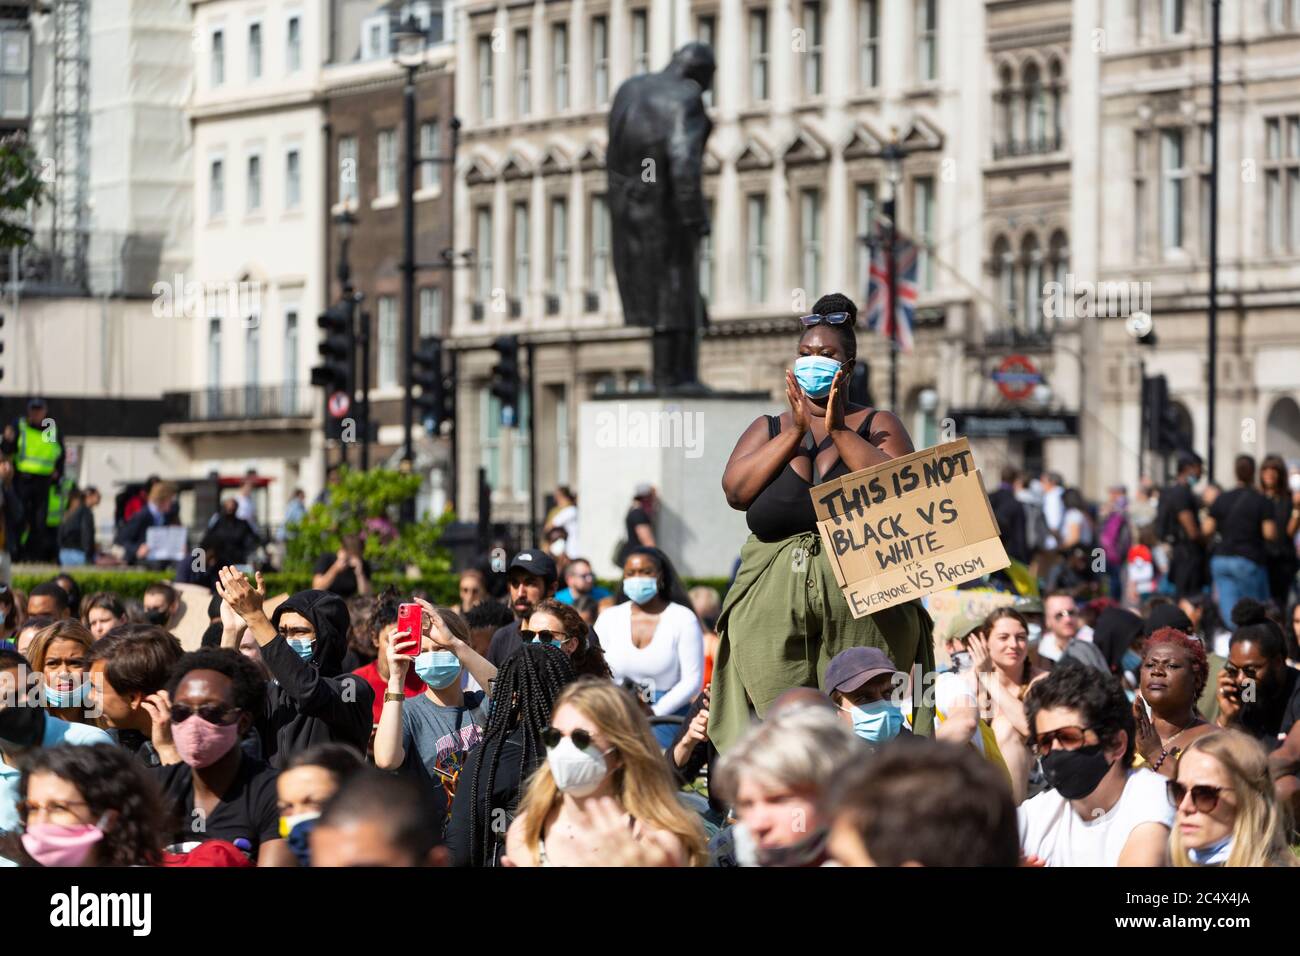 Une manifestante féminine se tient parmi une foule qui applaudit lors d'une démonstration de Black Lives Matter, Parliament Square, Londres, 21 juin 2020 Banque D'Images